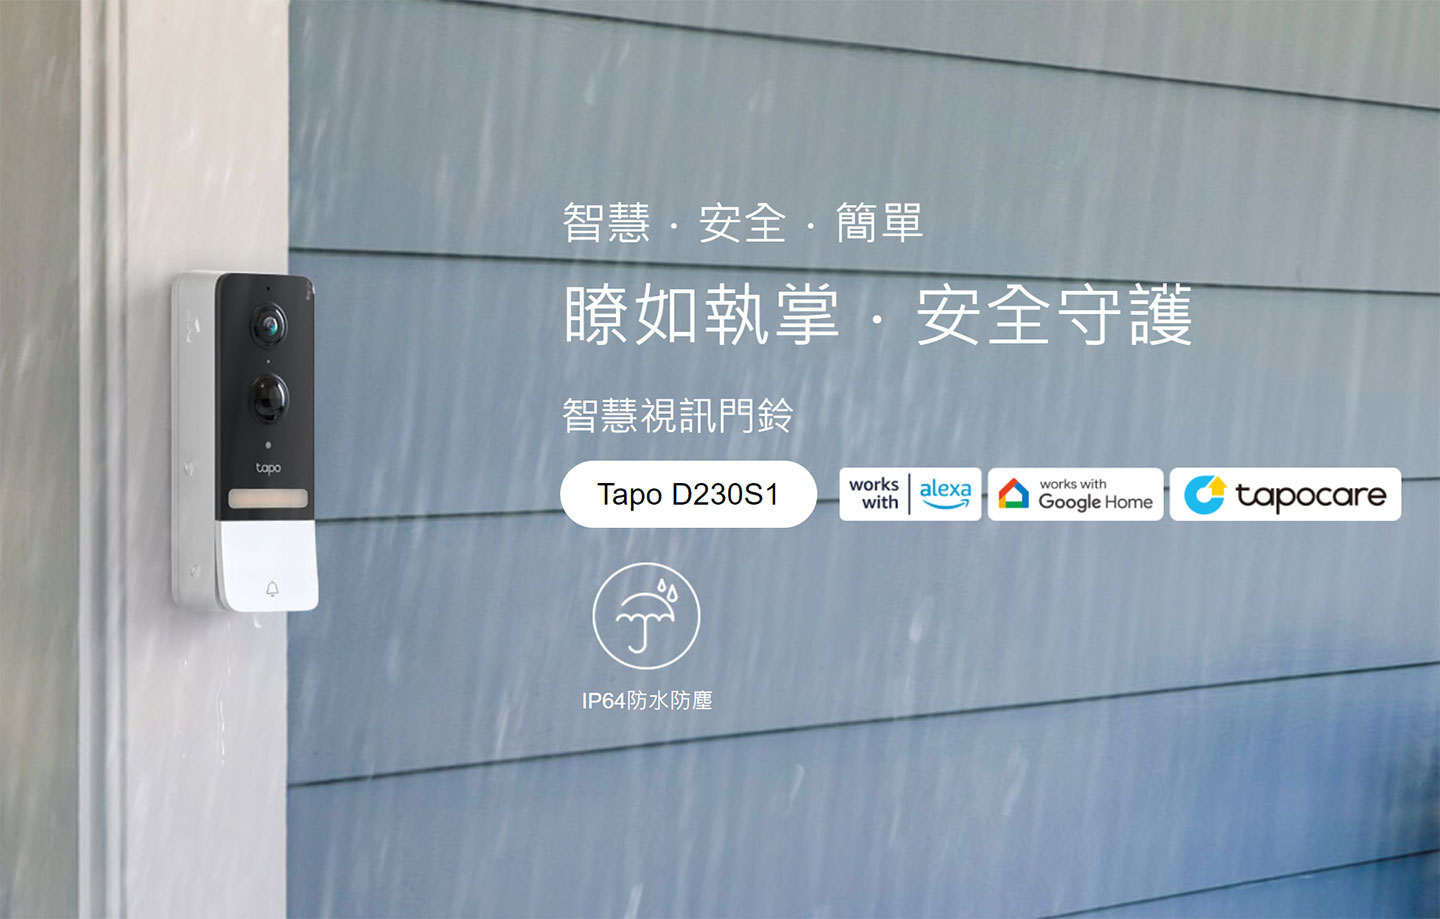 即將在台灣上市的 TP-Link Tapo D230S1 智慧門鈴具備 IP64 防水防塵功能，也是少數真能在戶外環境使用的智慧門鈴產品。